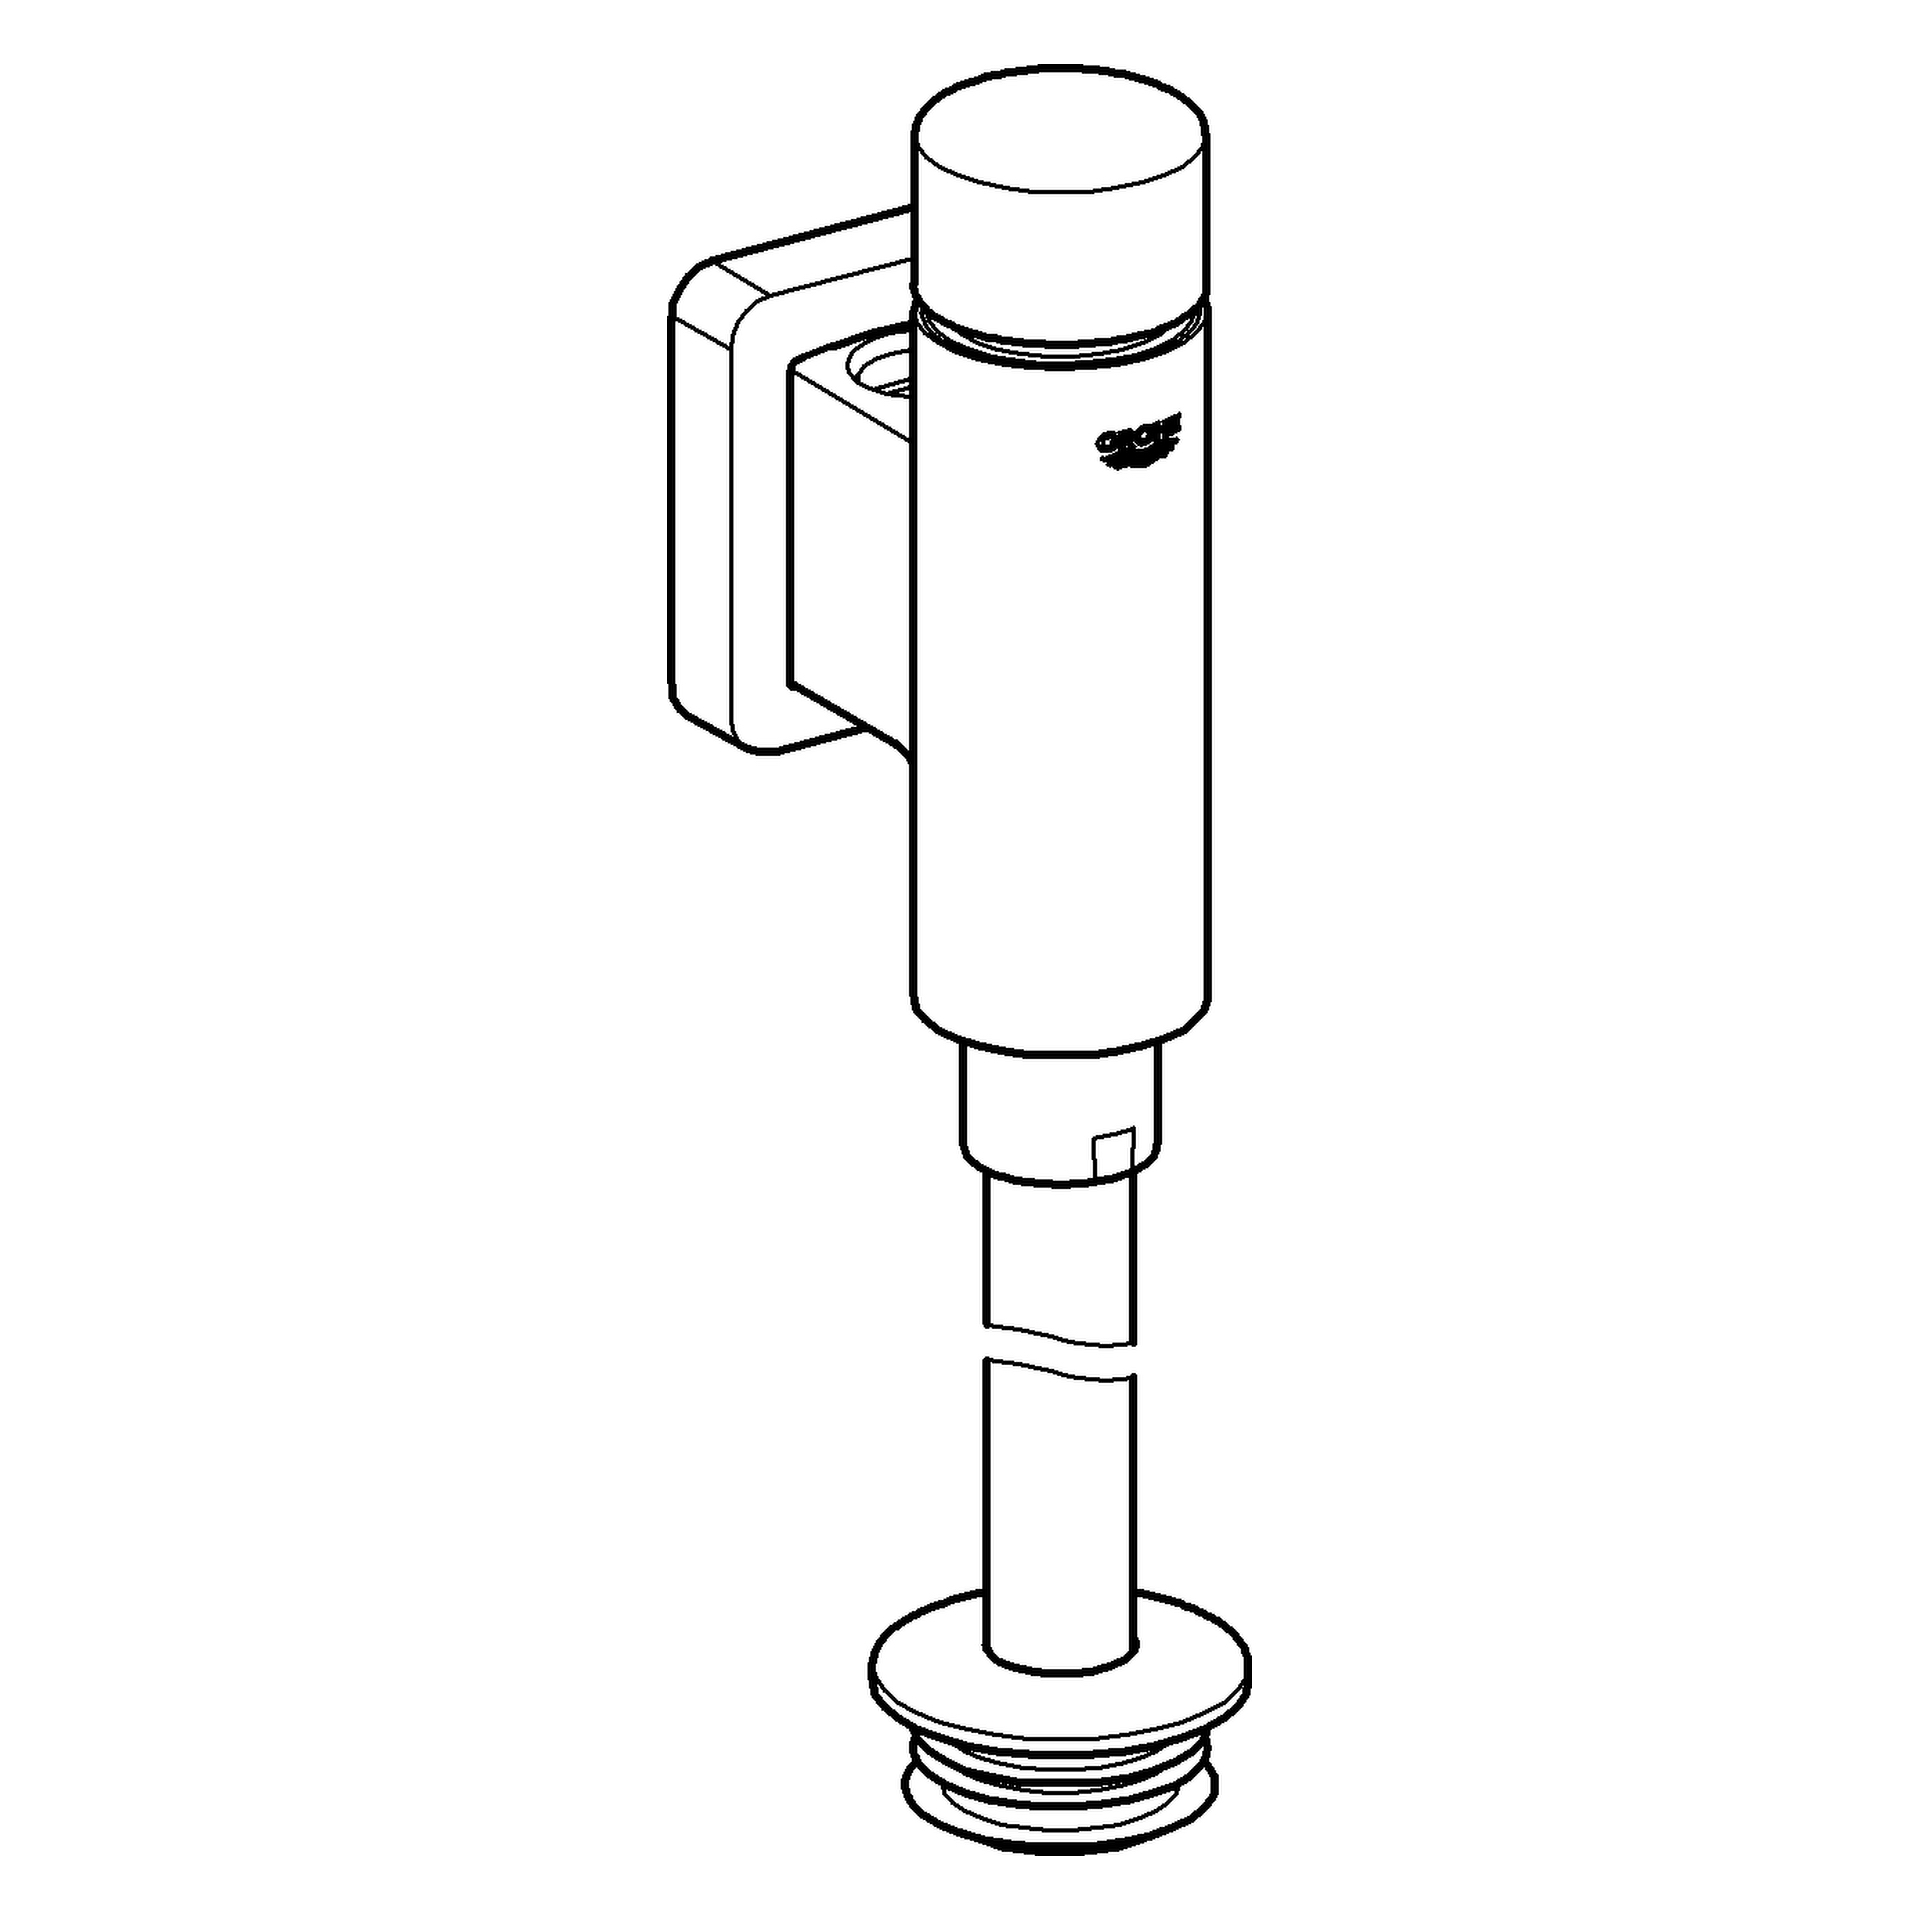 Urinal-Druckspüler Rondo 37342, DN 15, integrierte Vorabsperrung, vandalensicher durch Betätigungsknopf aus Metall, chrom